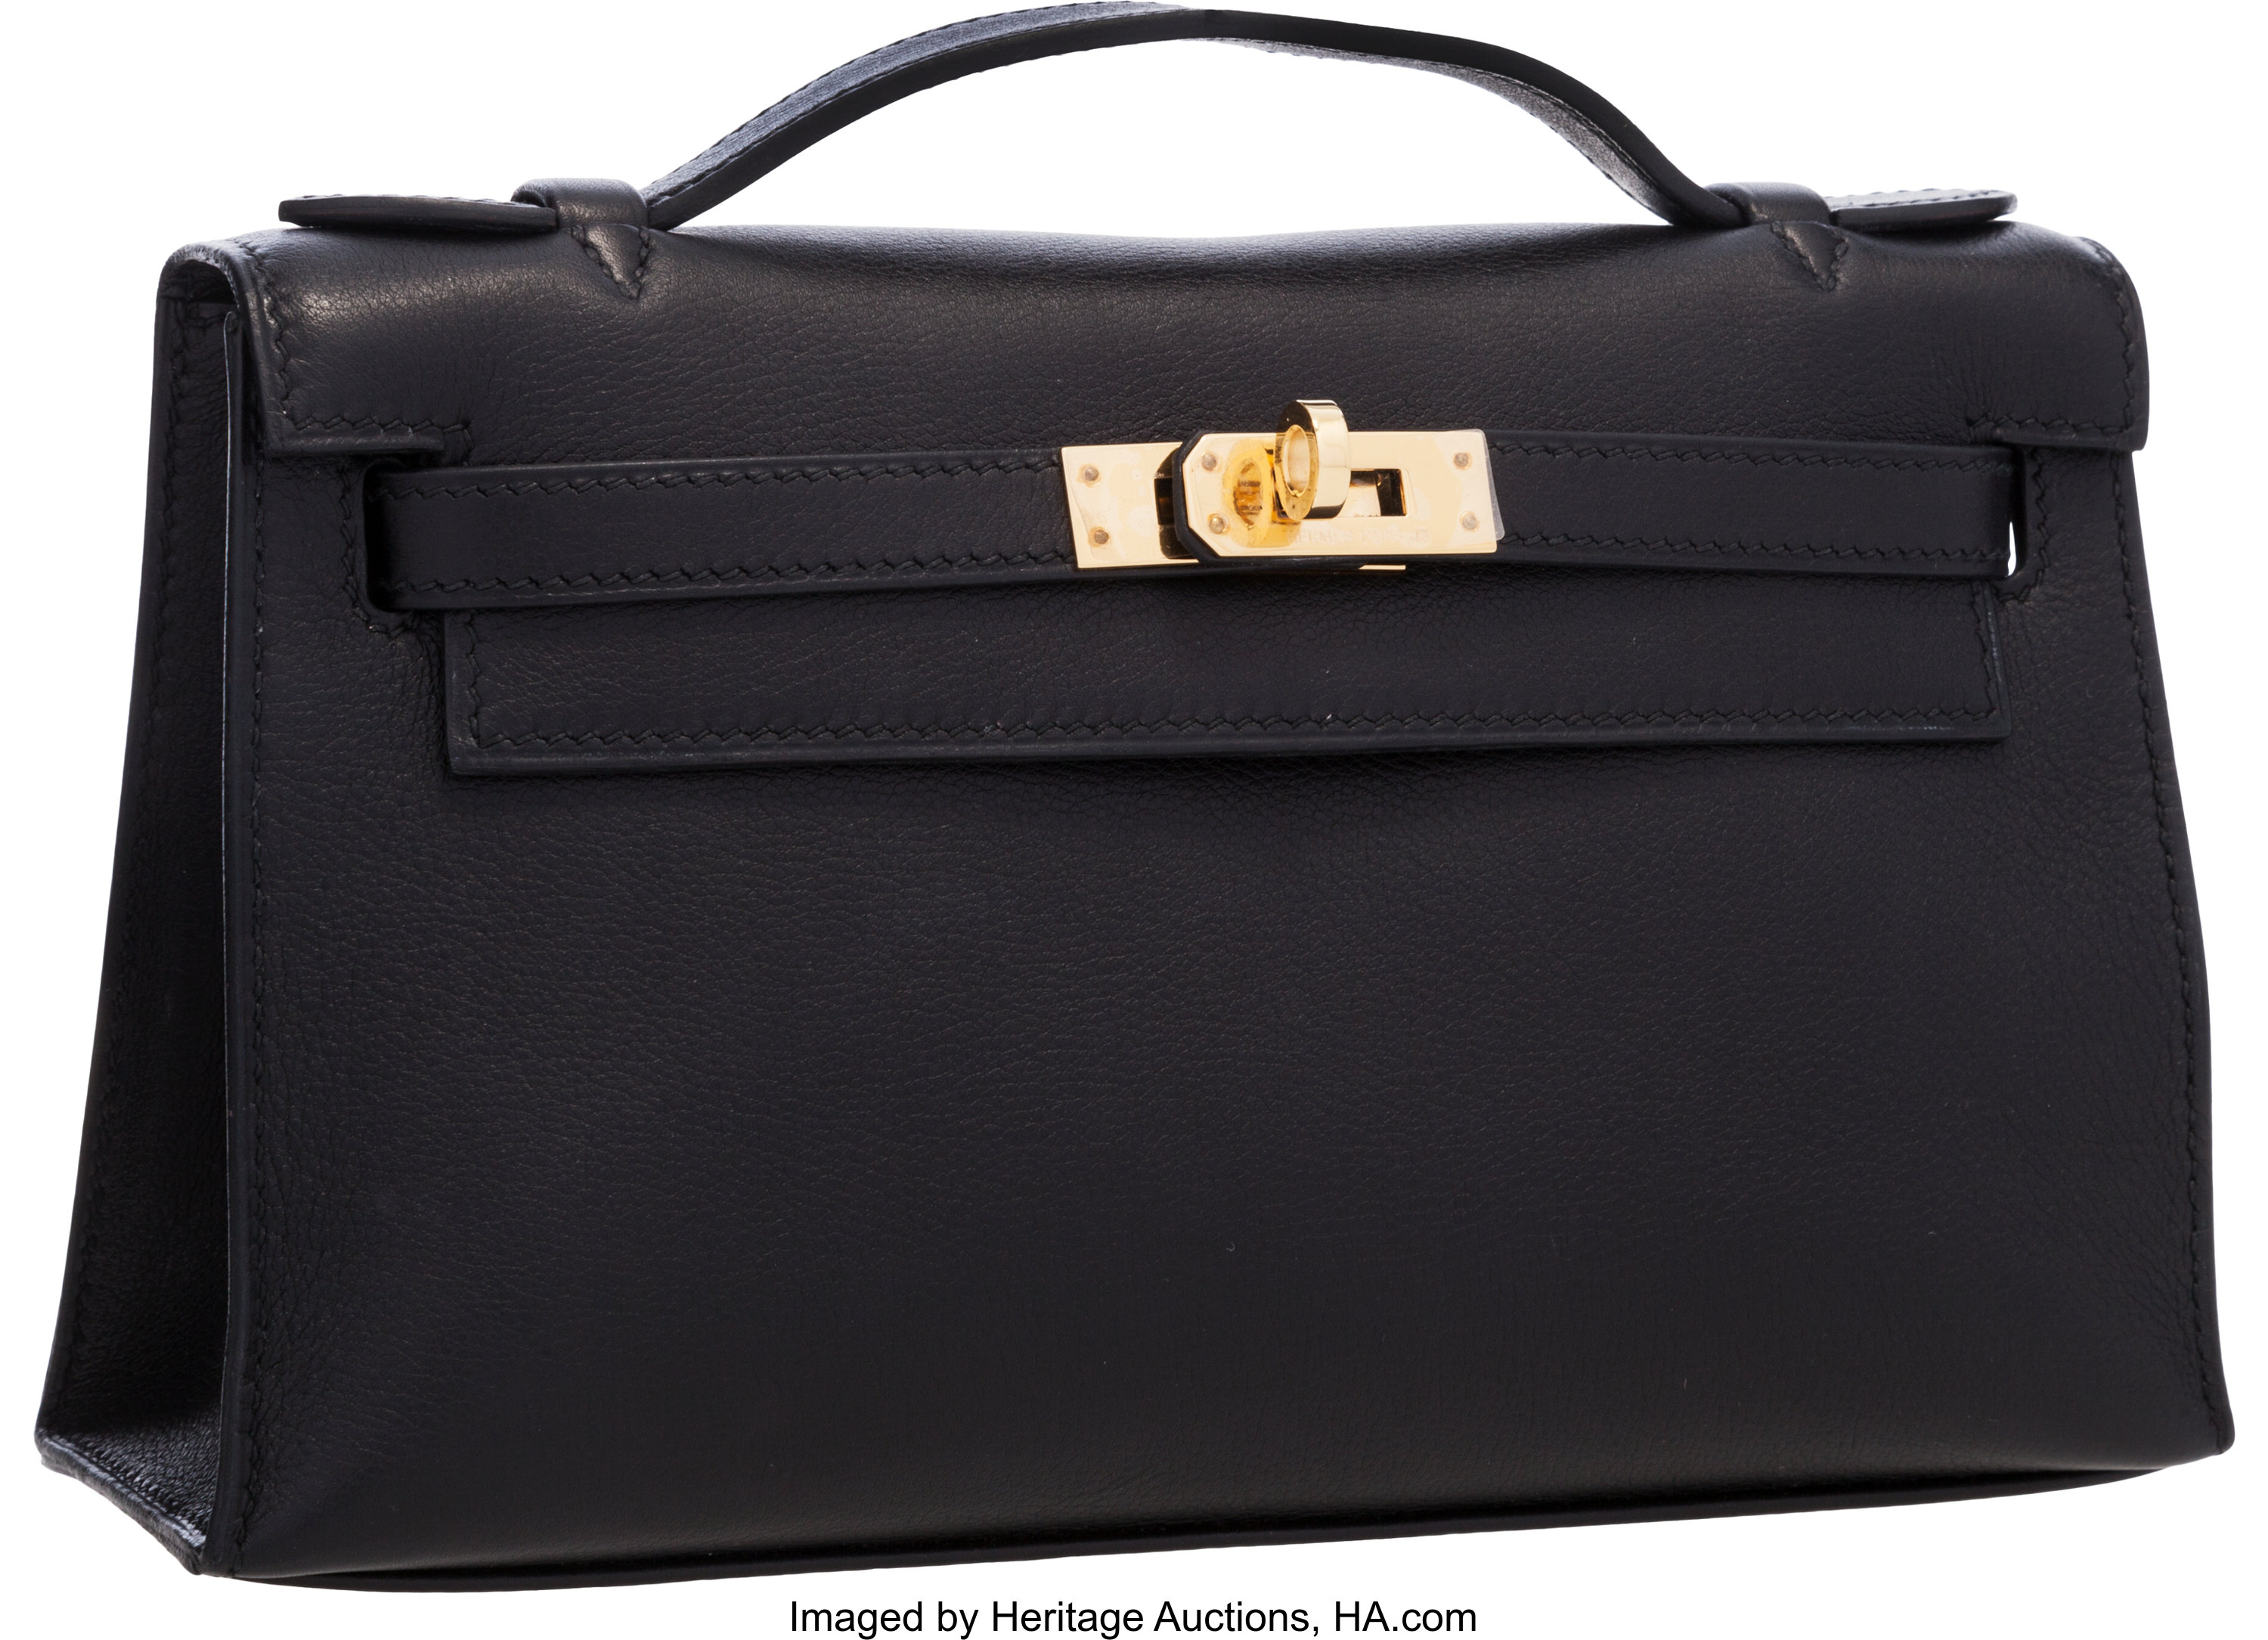 Hermes 32cm Havane Evergrain Leather Gold Hardware HAC Birkin Bag